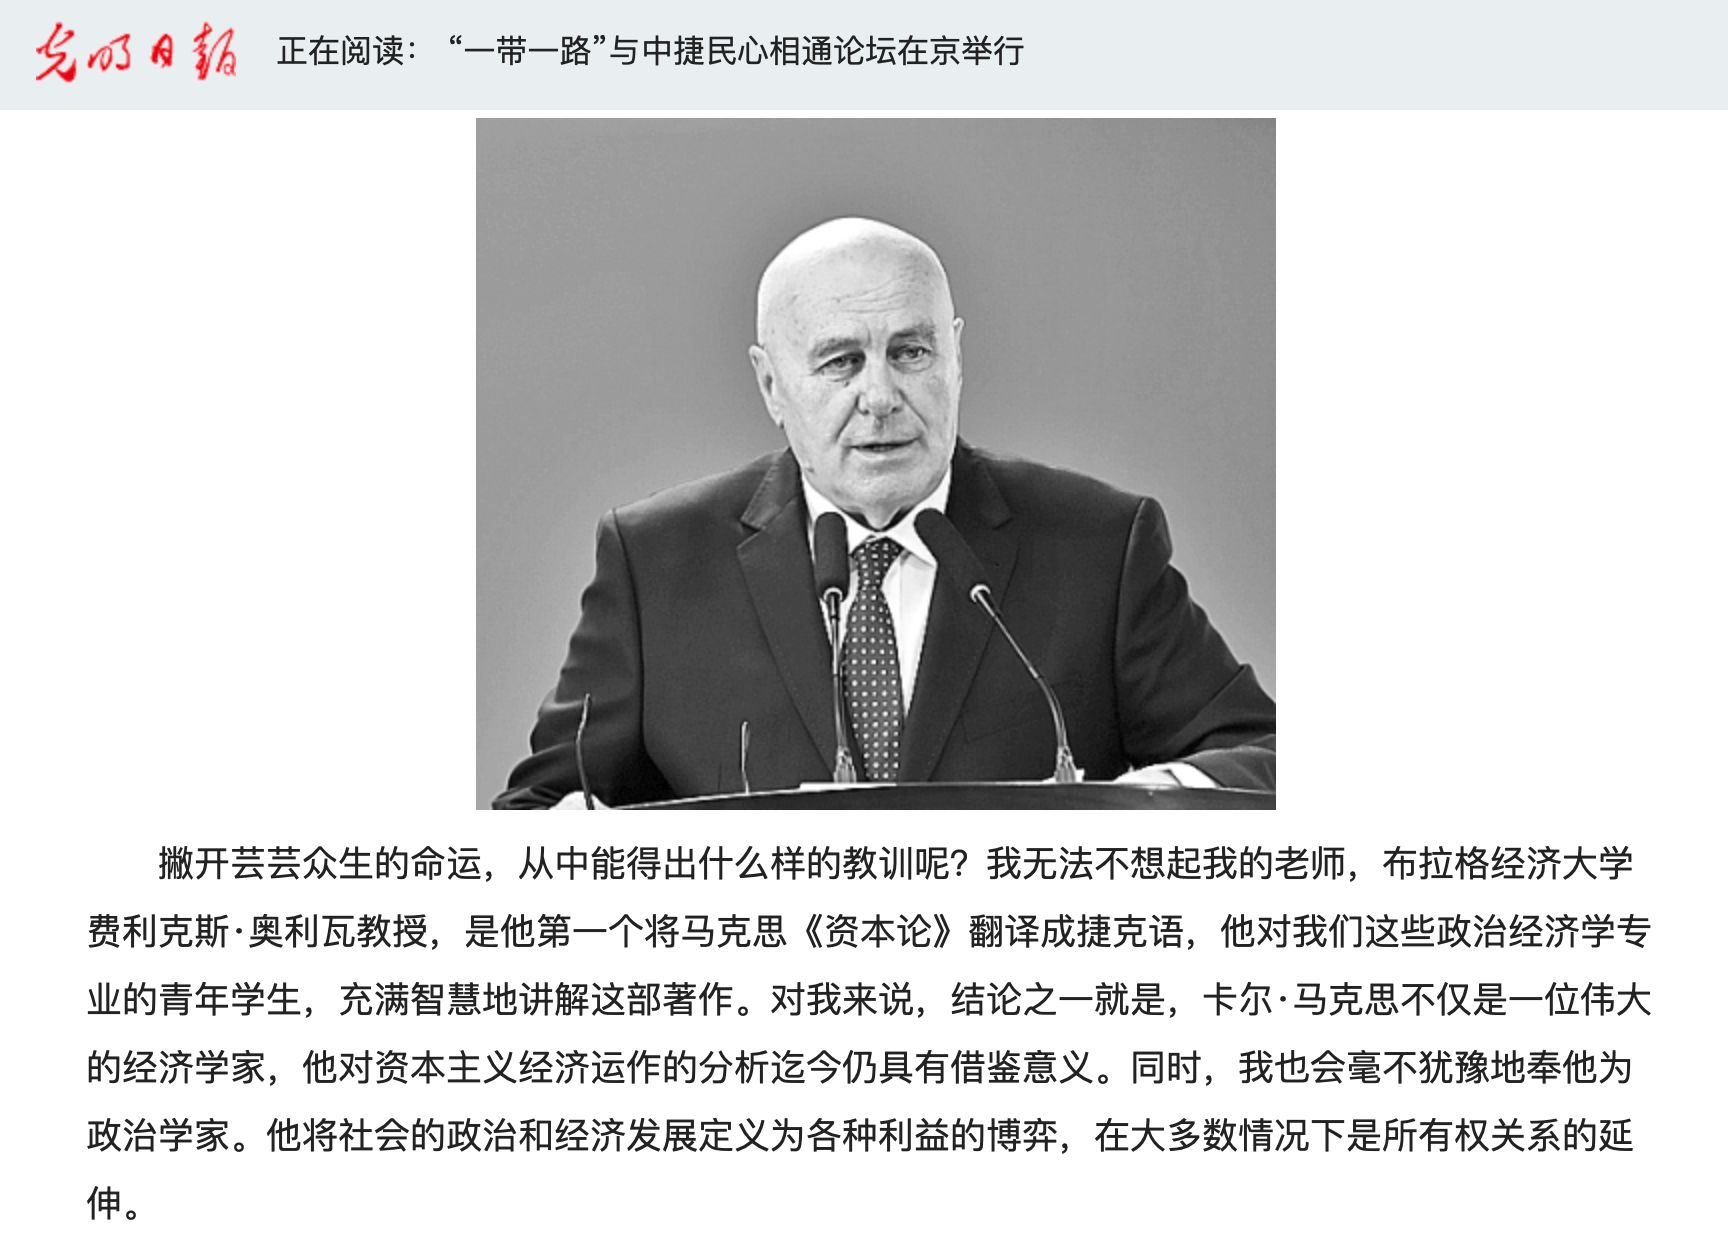 O proslovu Miroslava Pavla na loňském fóru referoval partnerský čínský vládní deník.